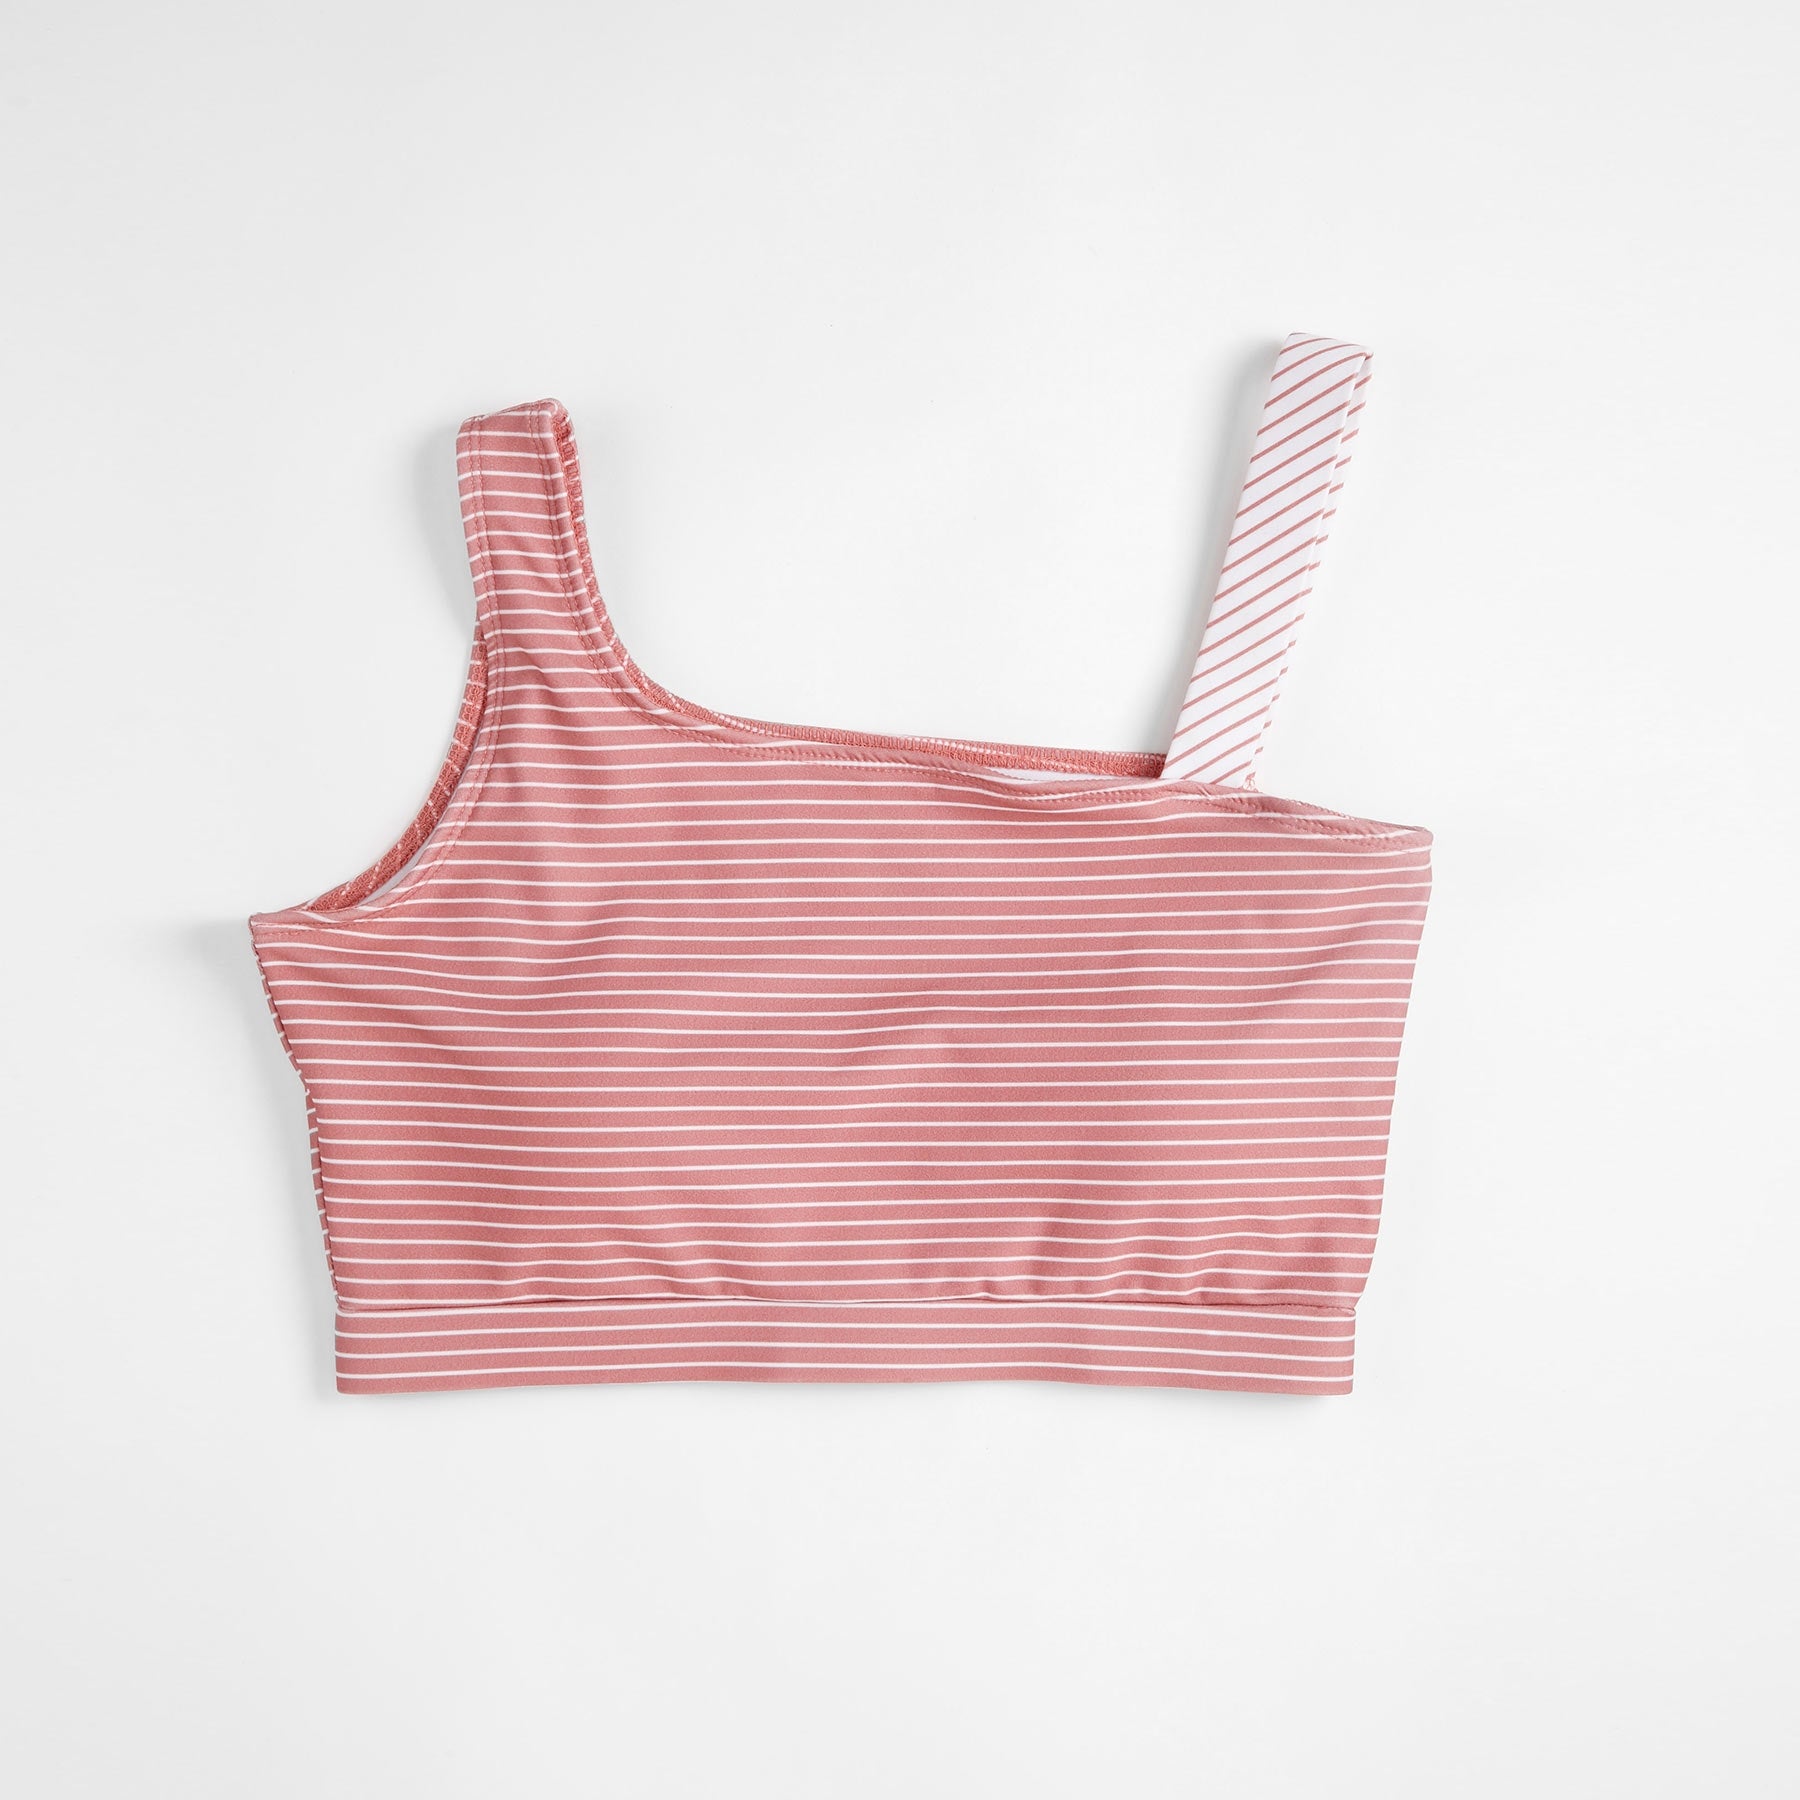 Rose Striped Bikini Top